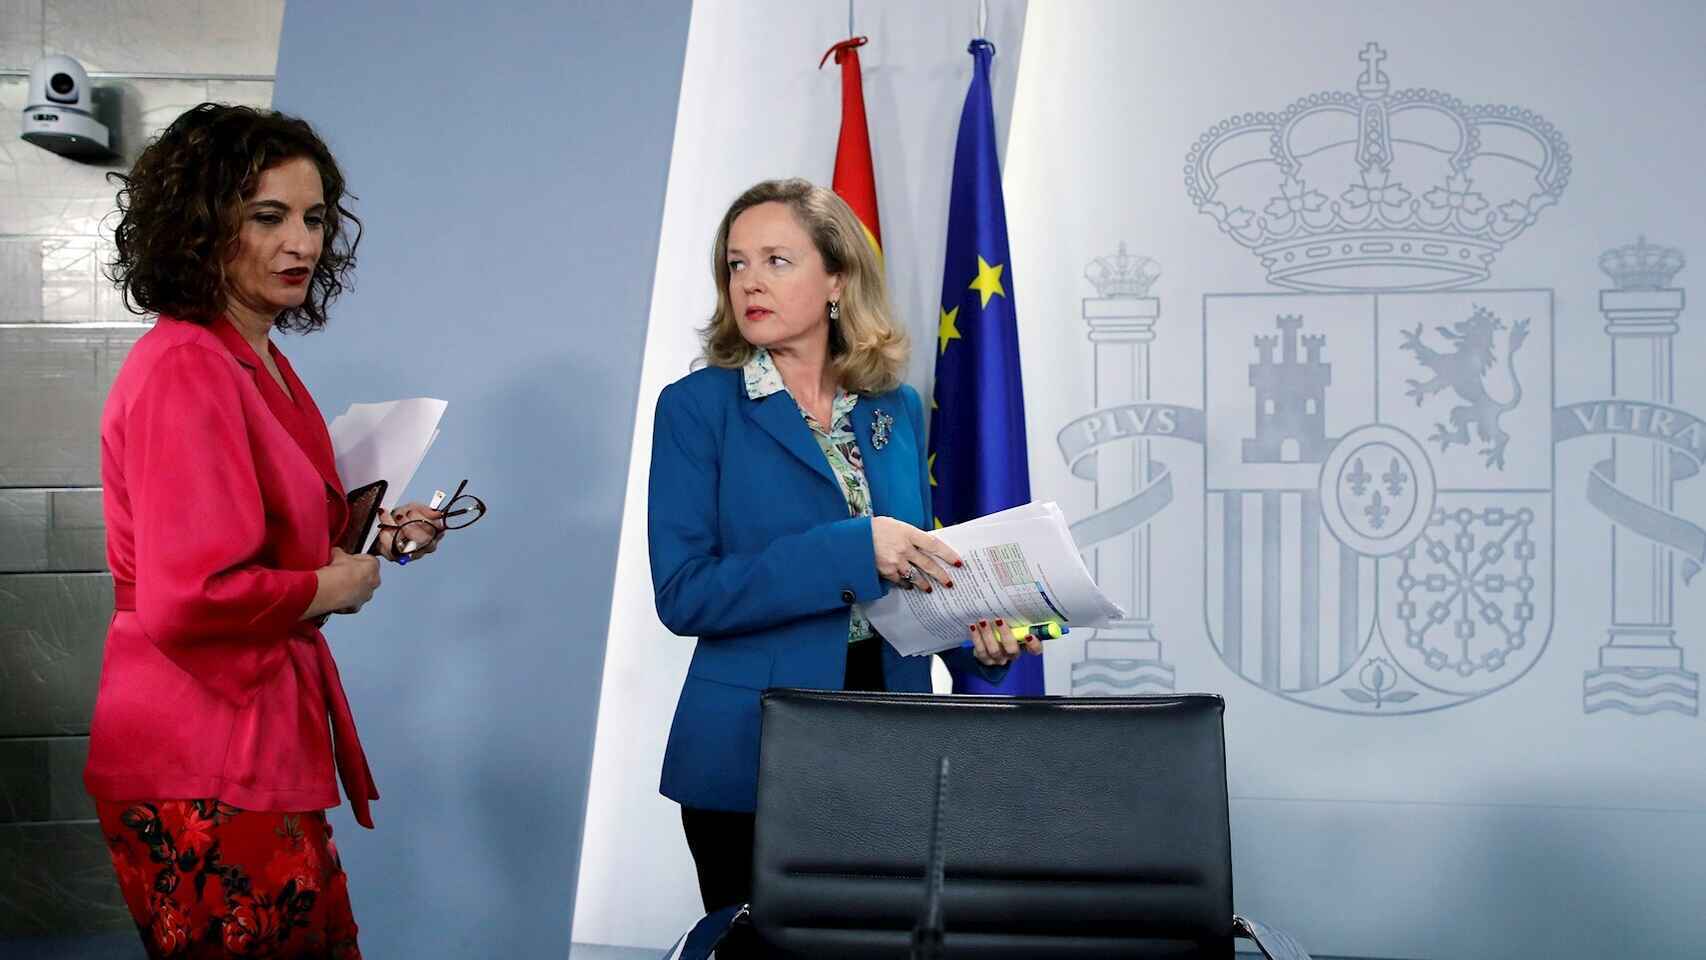 La ministra de Hacienda, María Jesús Montero, junto a la vicepresidenta primera del Gobierno y ministra de Asuntos Económicos y Transformación Digital, Nadia Calviño.